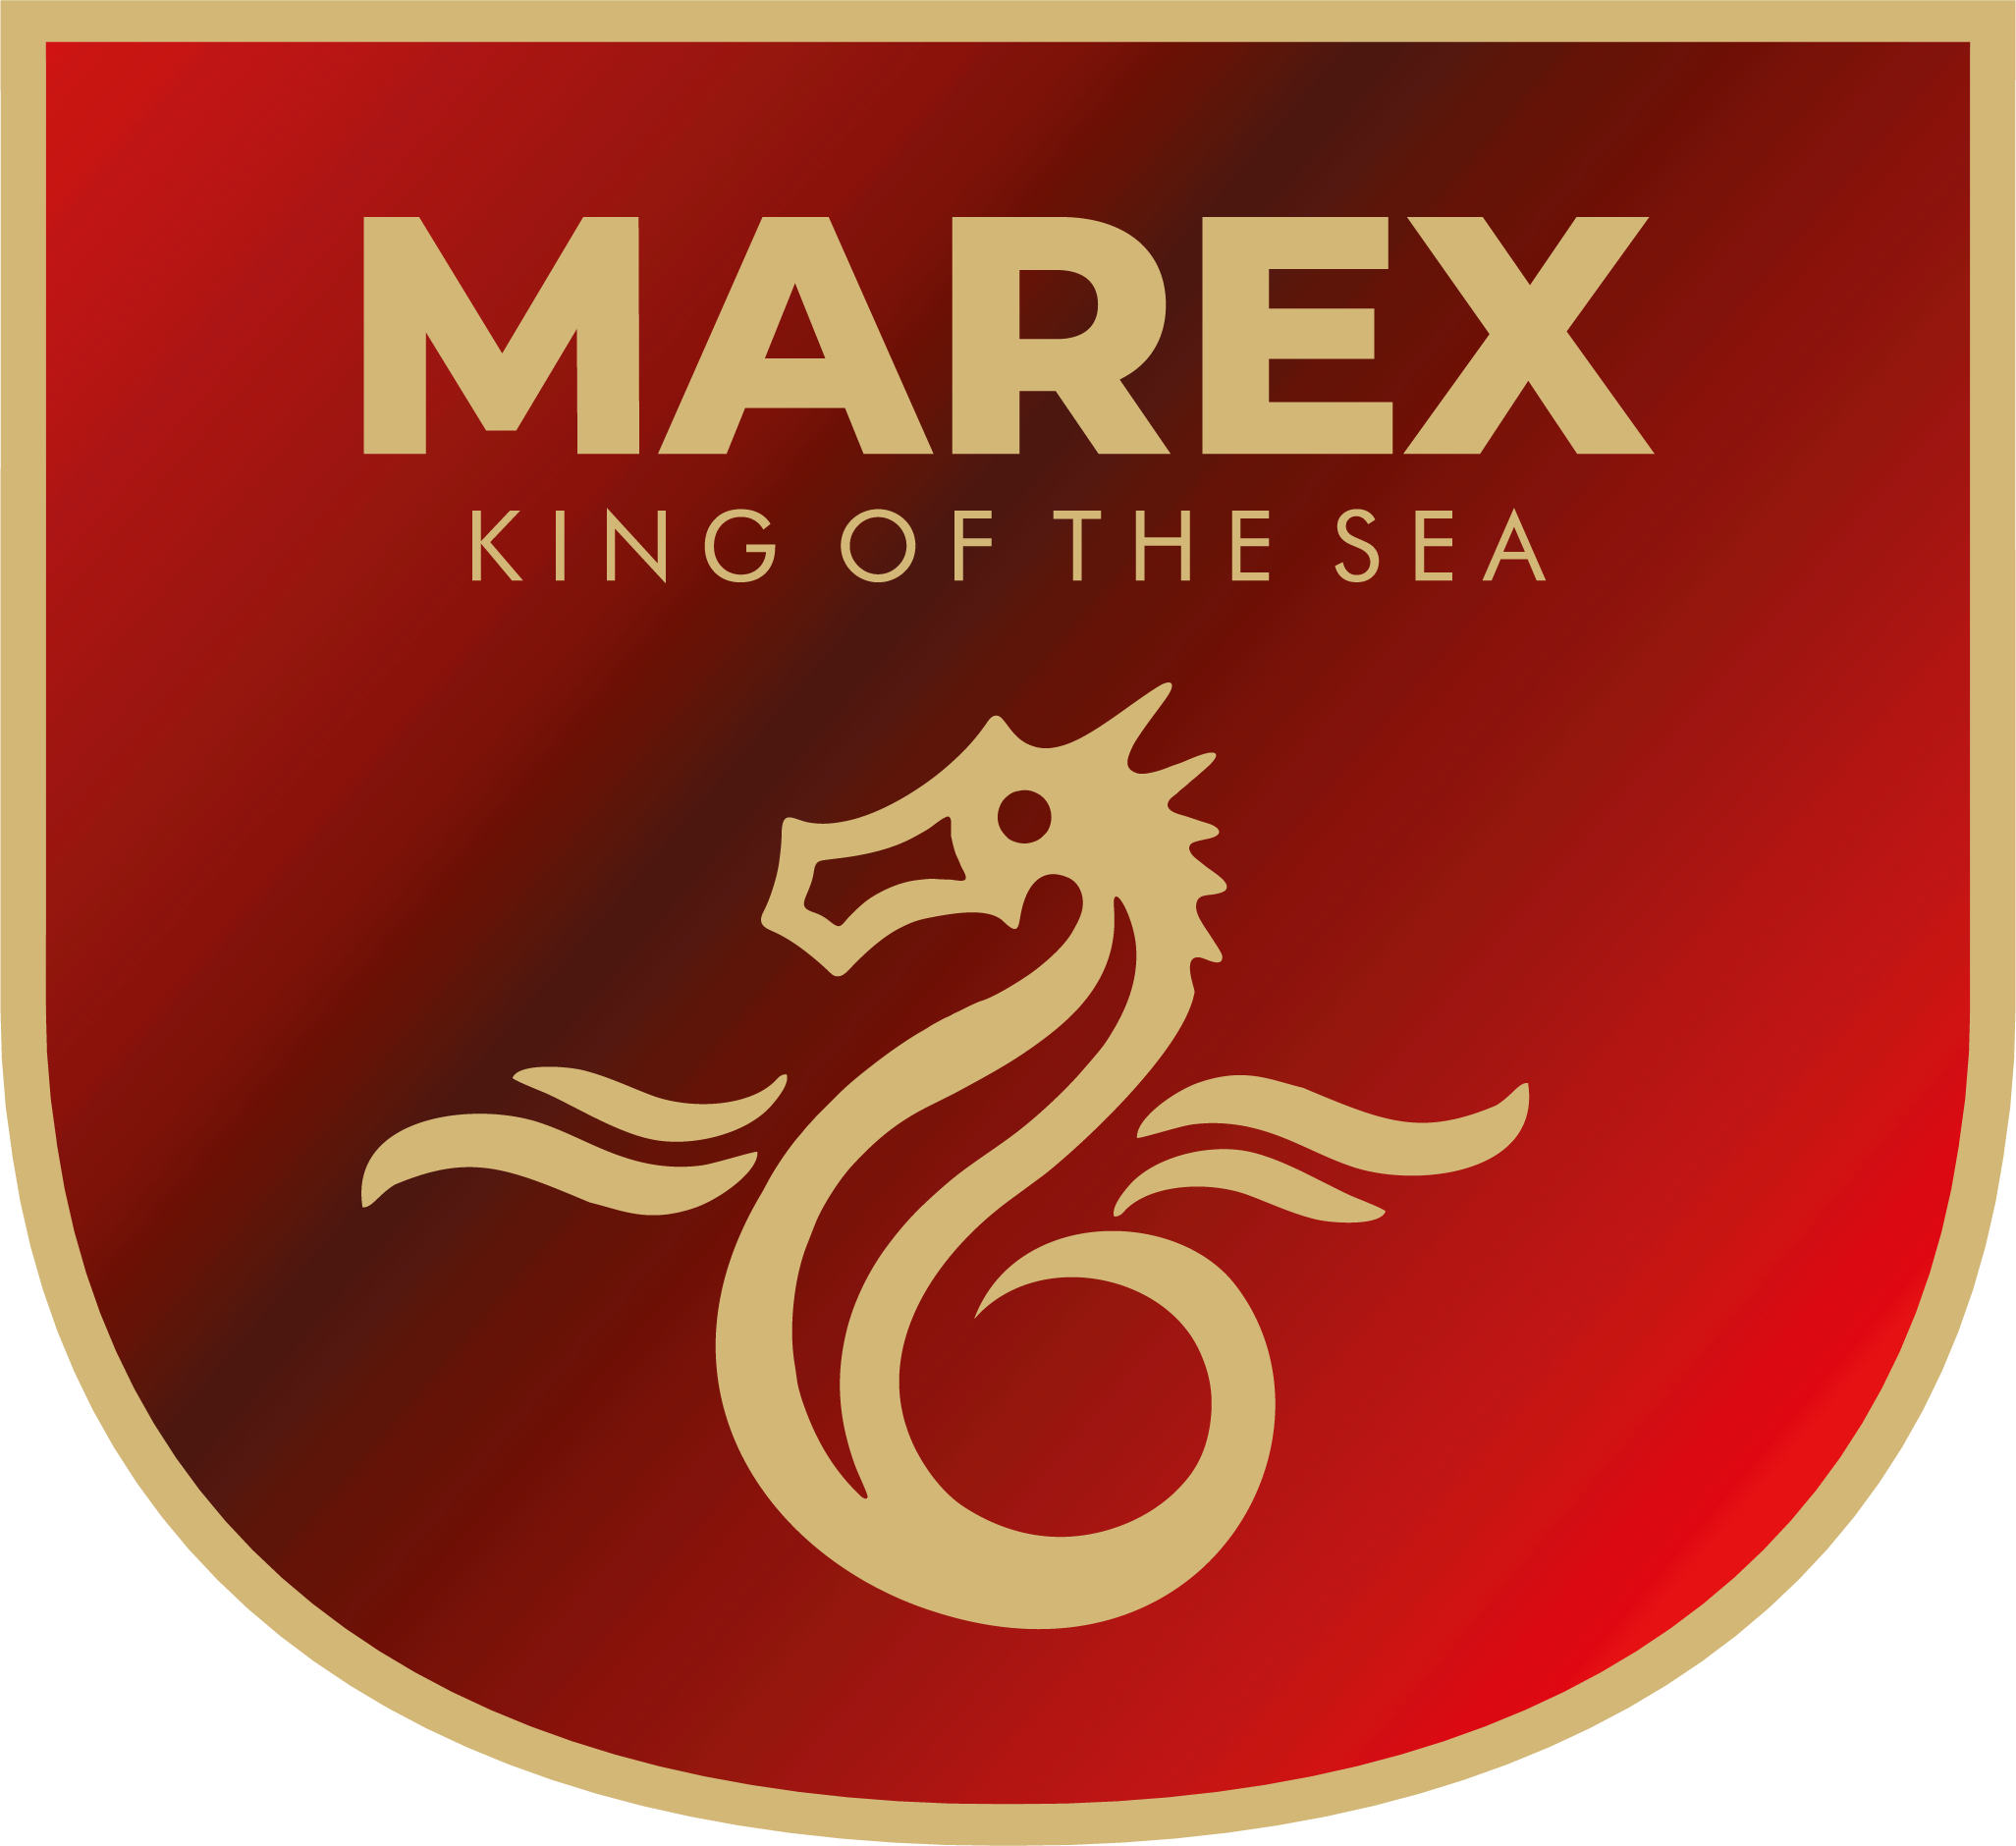 Marex range